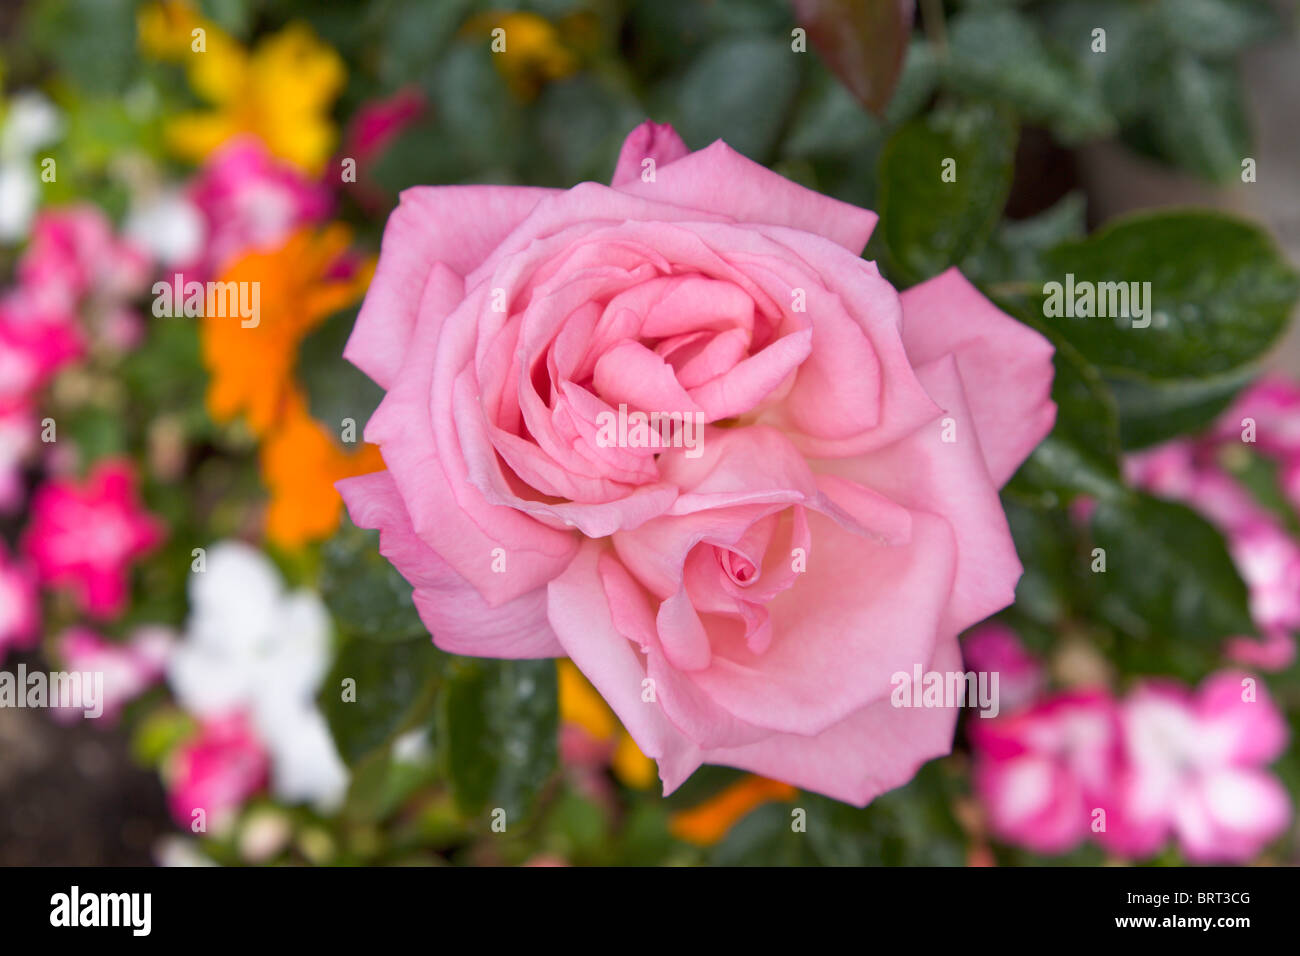 Climbing rose, Dancing Queen, England Stock Photo